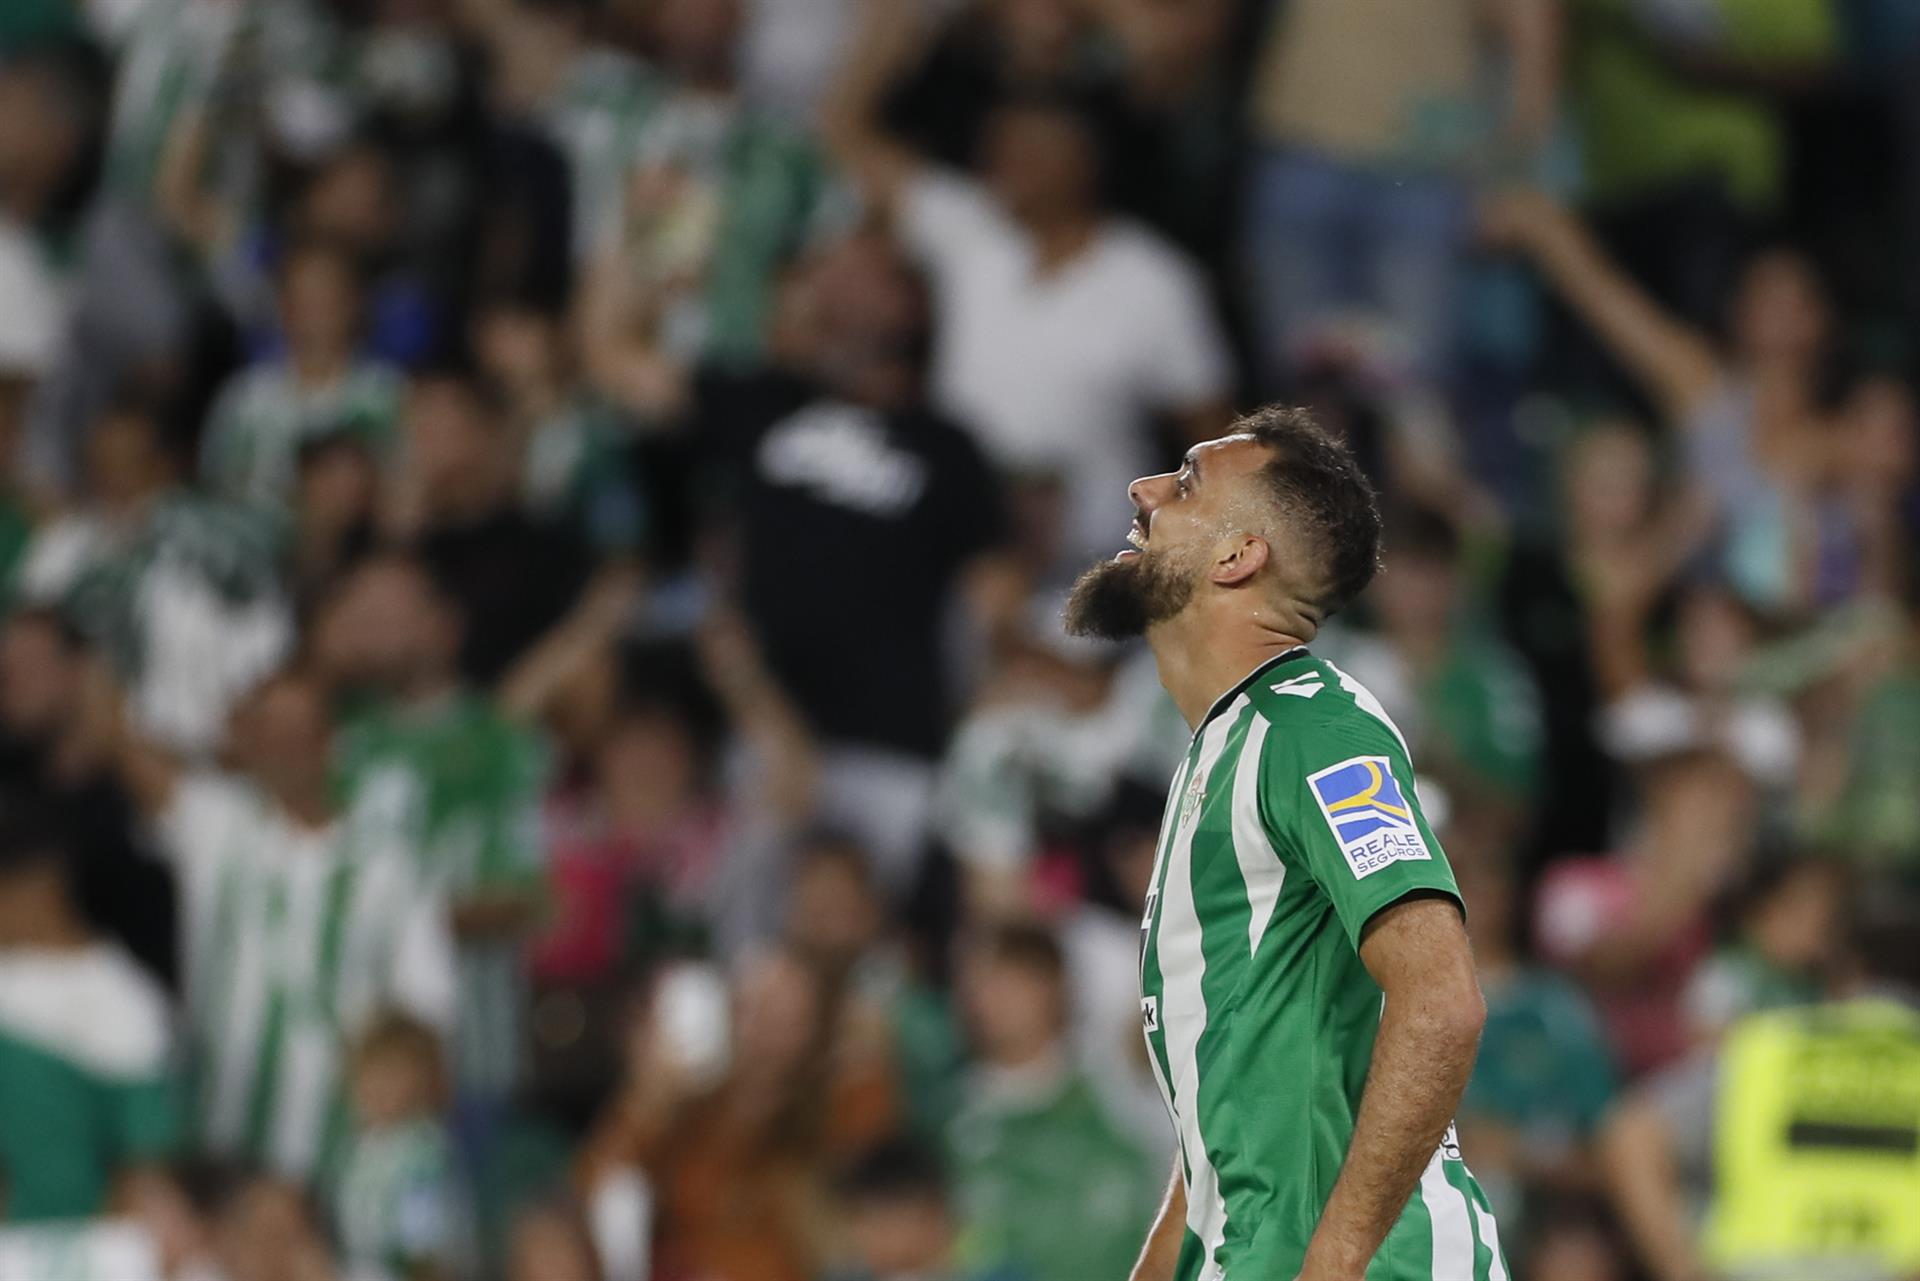 El delantero del Betis Borja Iglesias celebra su gol durante el partido ante Osasuna disputado en el estadio Benito Villamarín. EFE/José Manuel Vidal